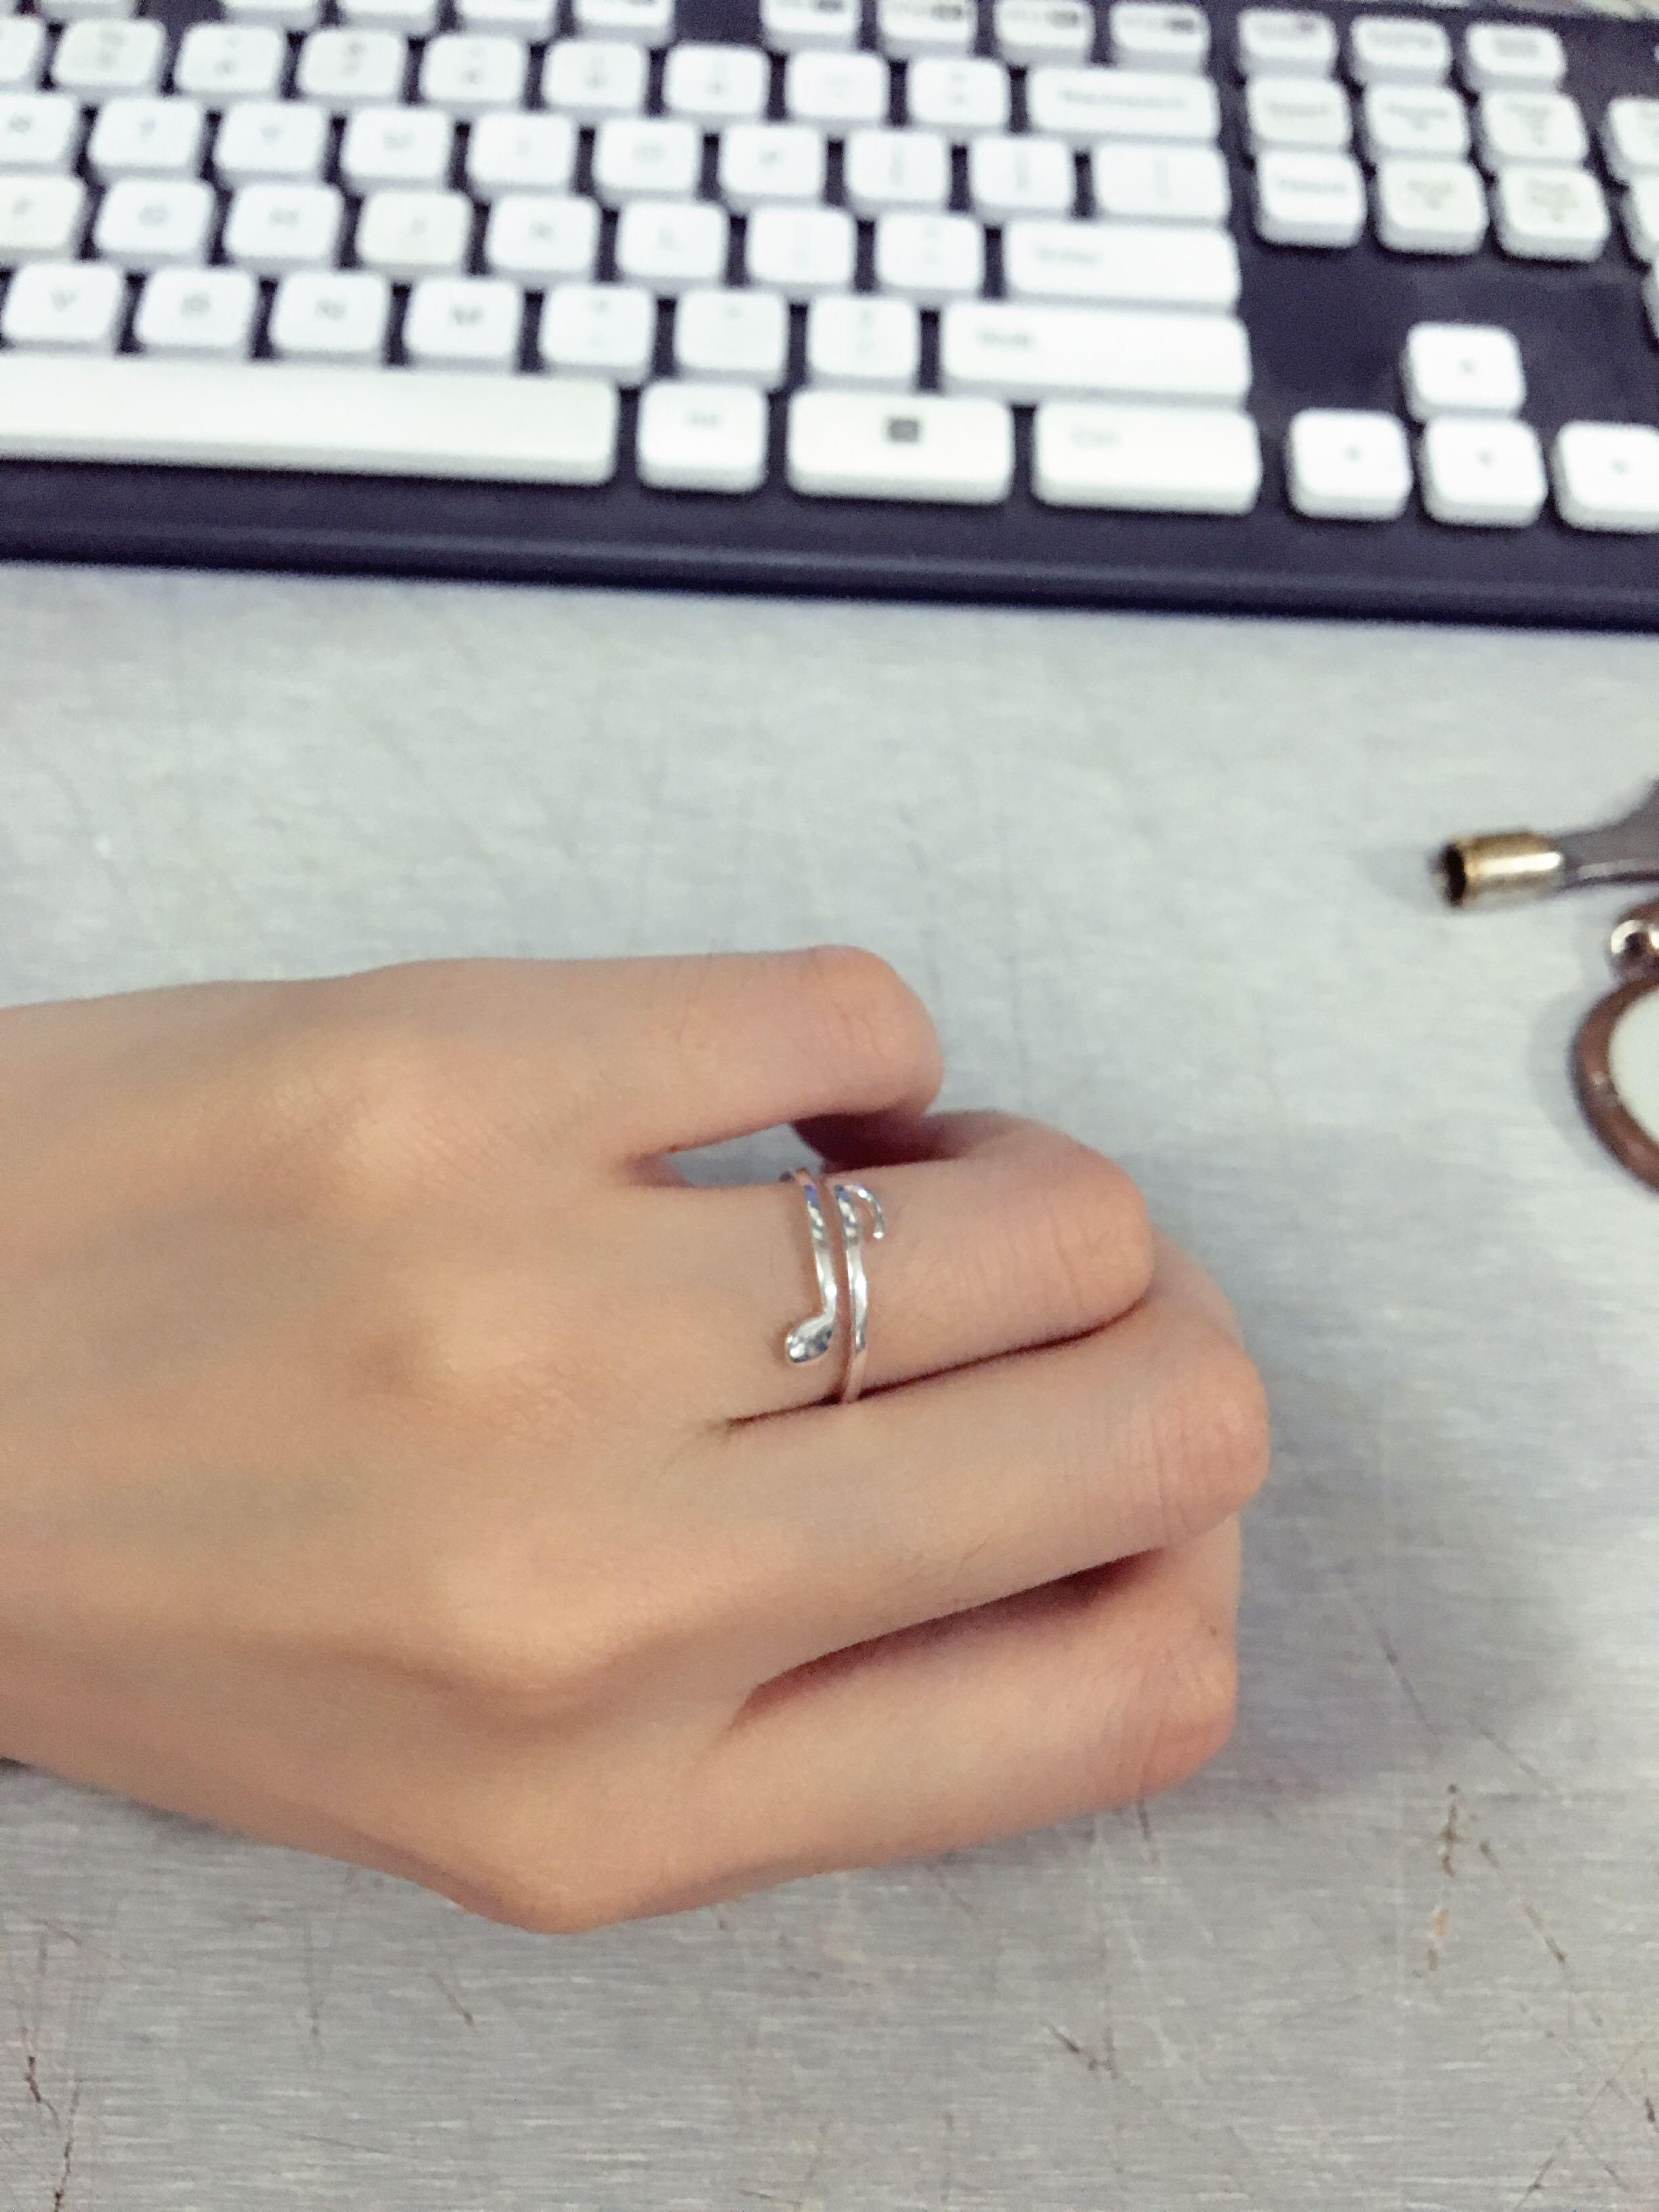 女生右手戴戒指的含义 右手戴戒指的说法 – 我爱钻石网官网